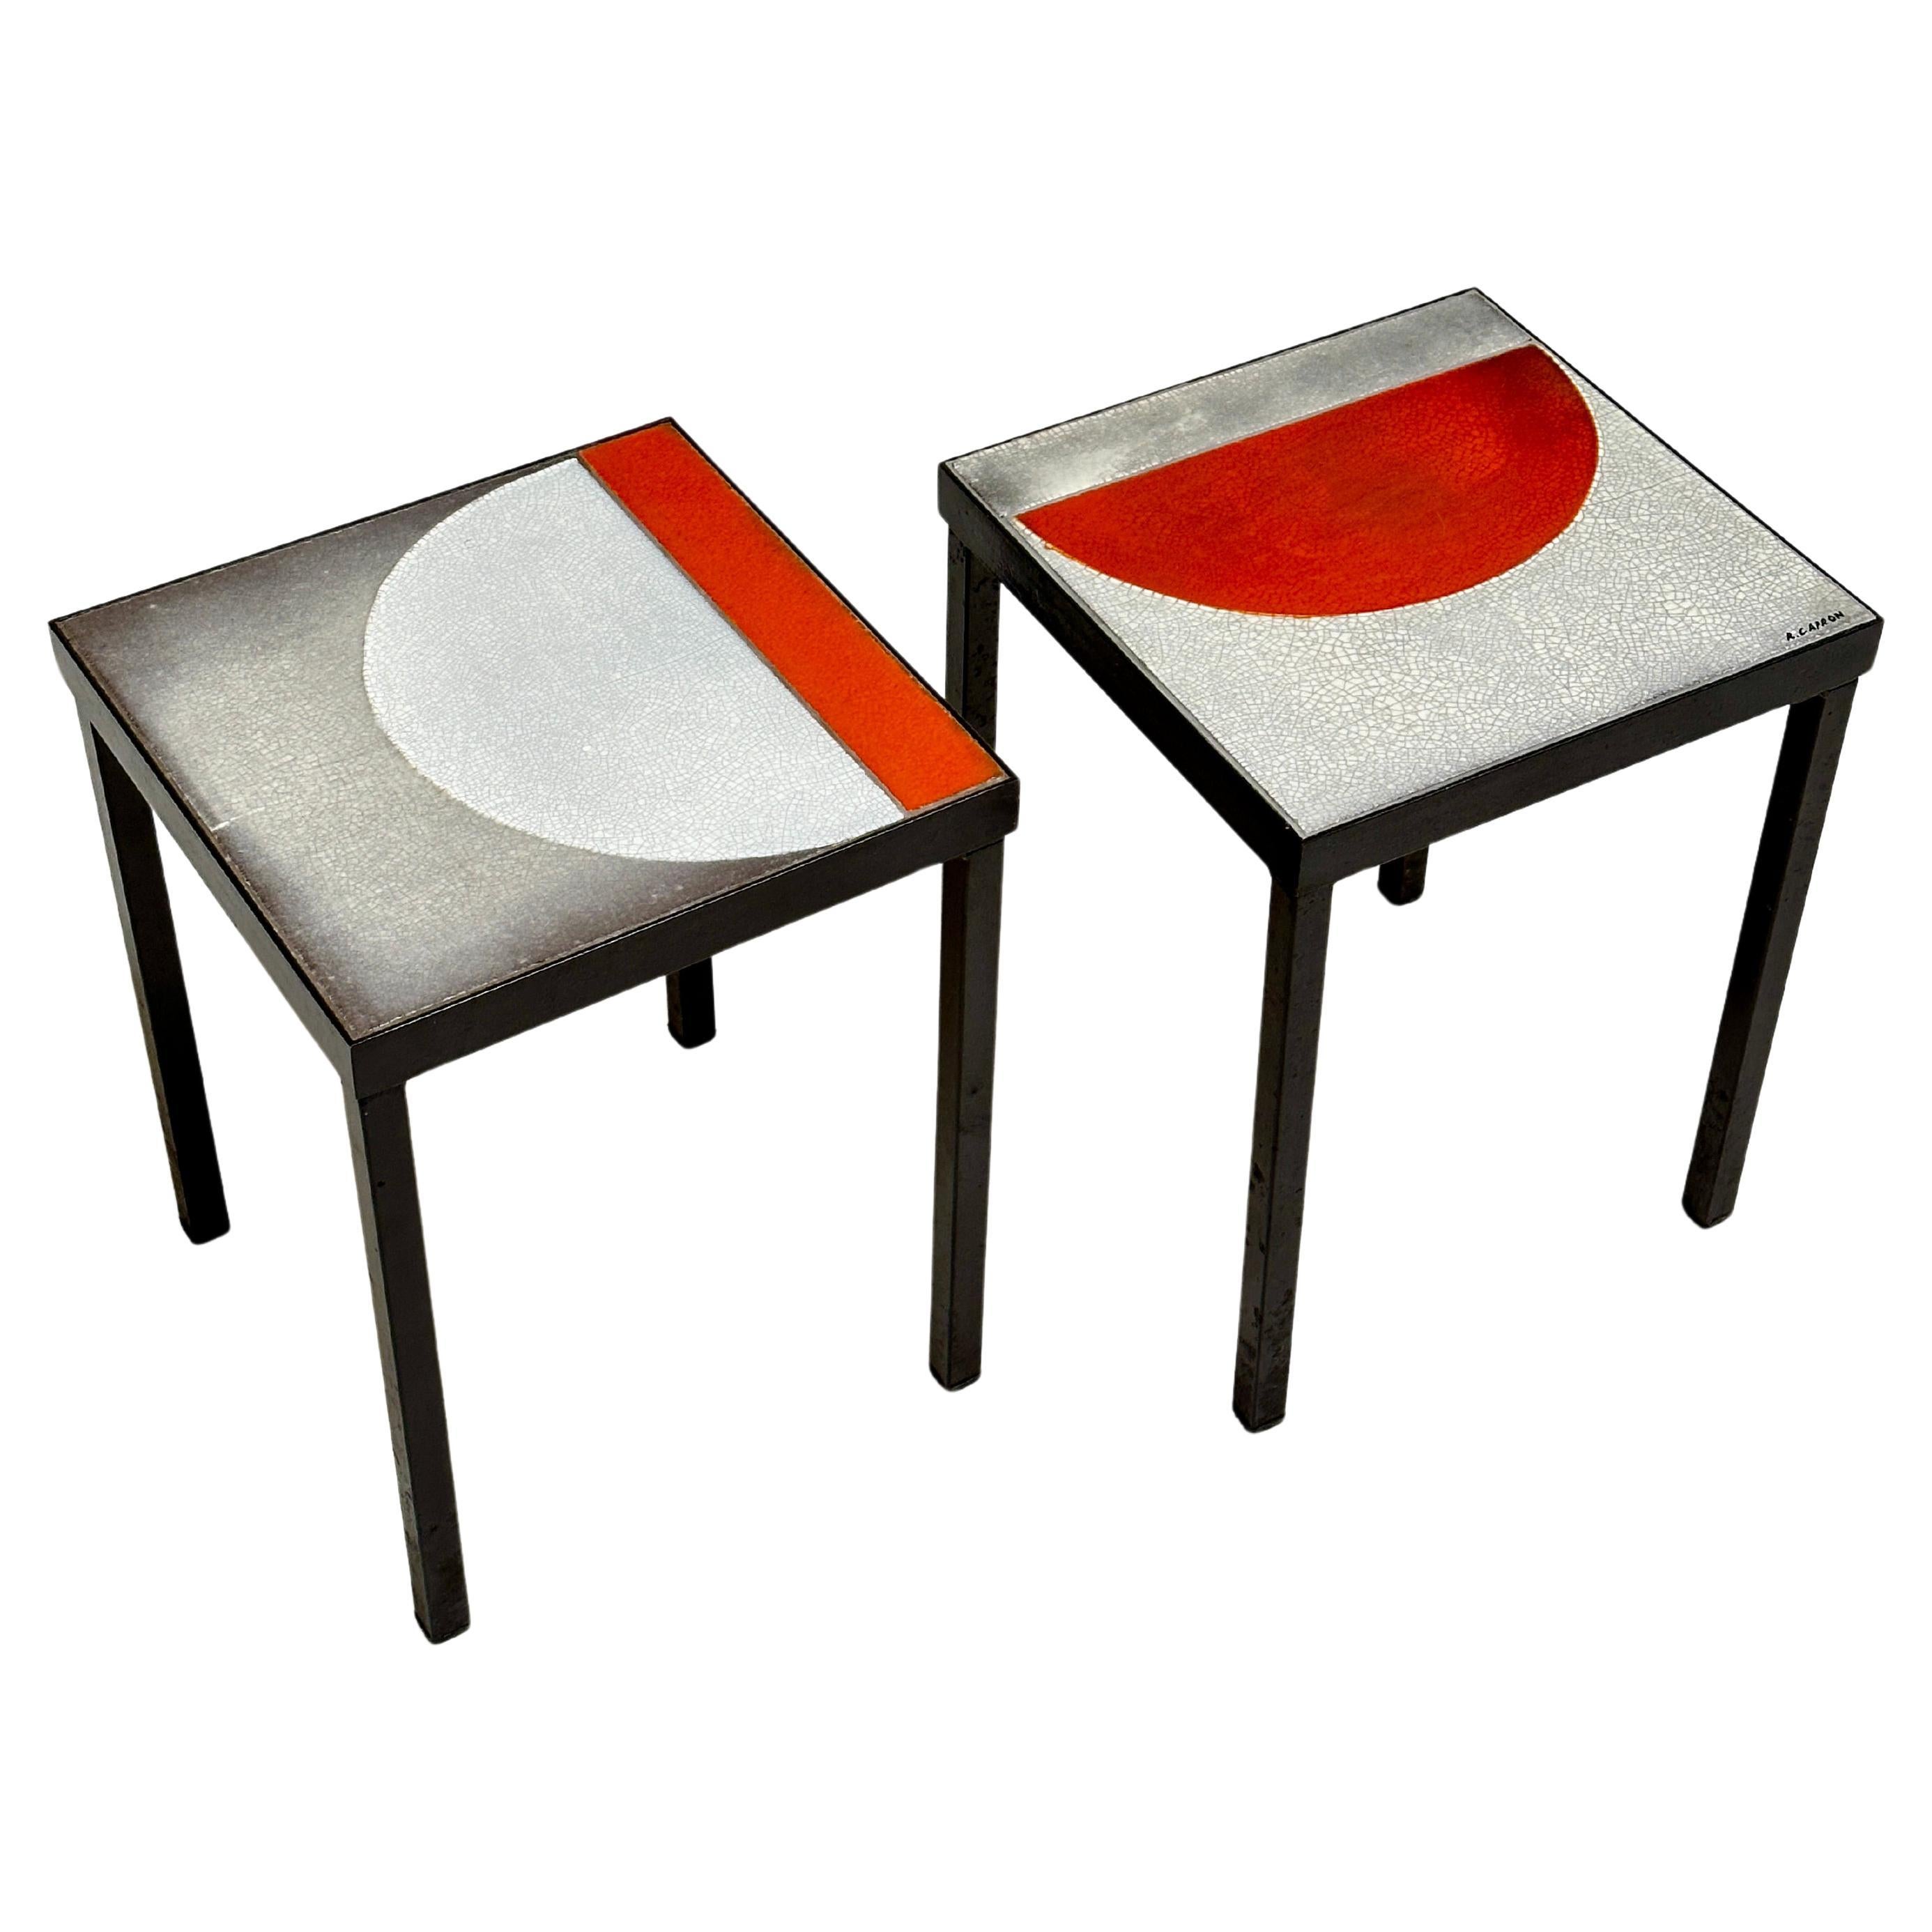 Ein Paar niedrige Tische, Roger Capron, Vallauris, um 1965